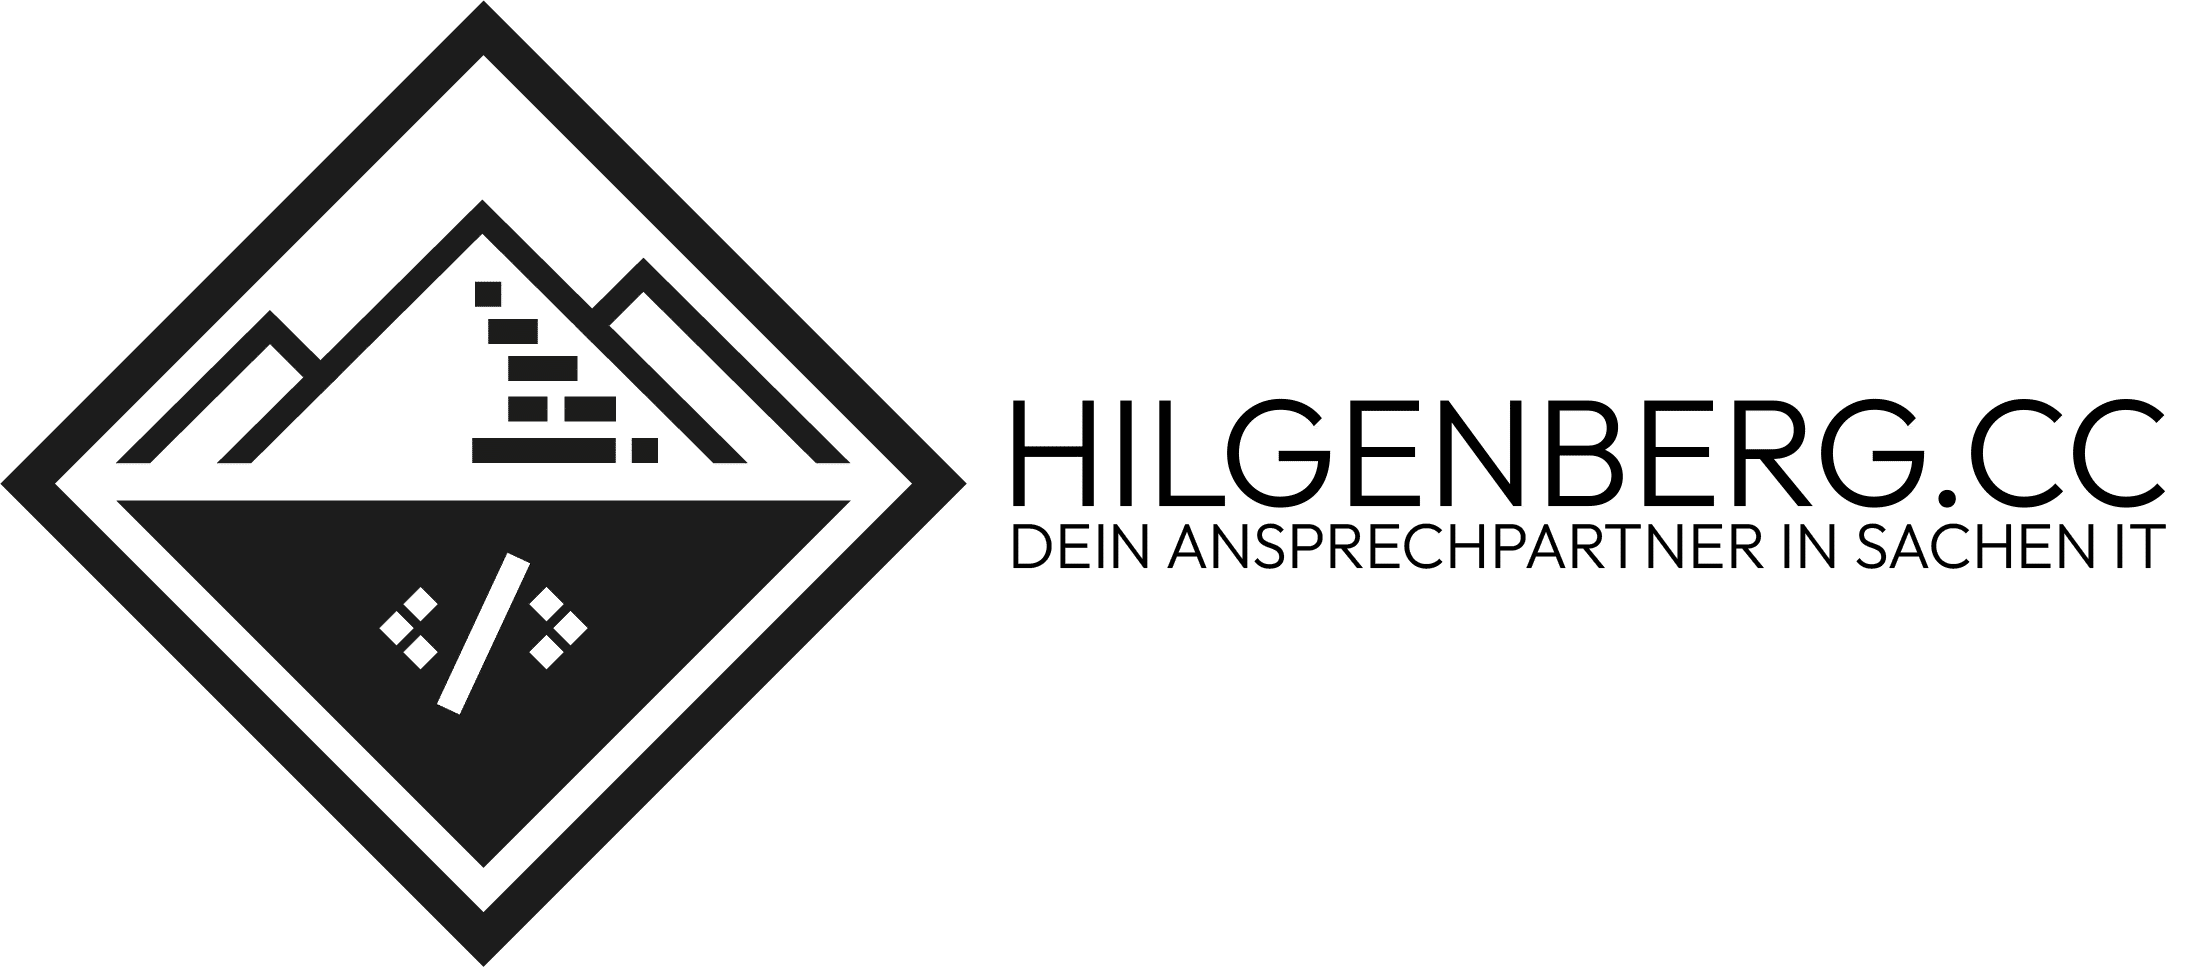 Hilgenberg.cc